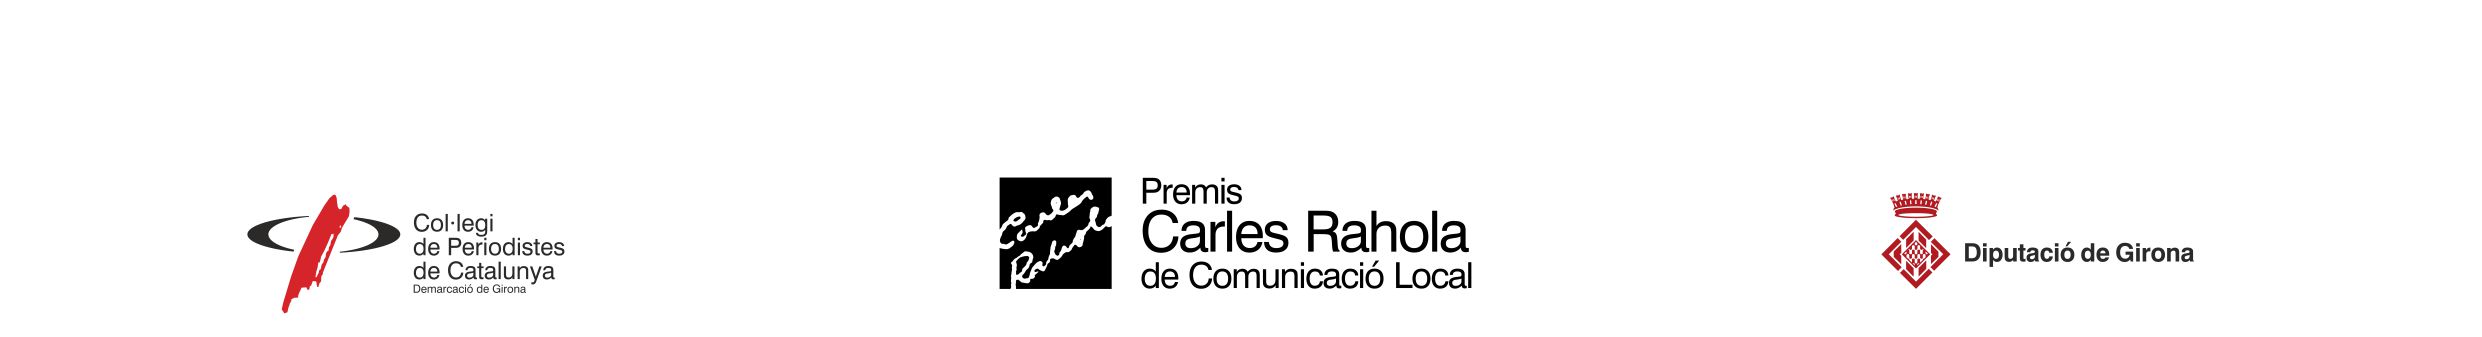 XII PREMIS CARLES RAHOLA DE COMUNICACIÓ LOCAL  TELEVISIÓ